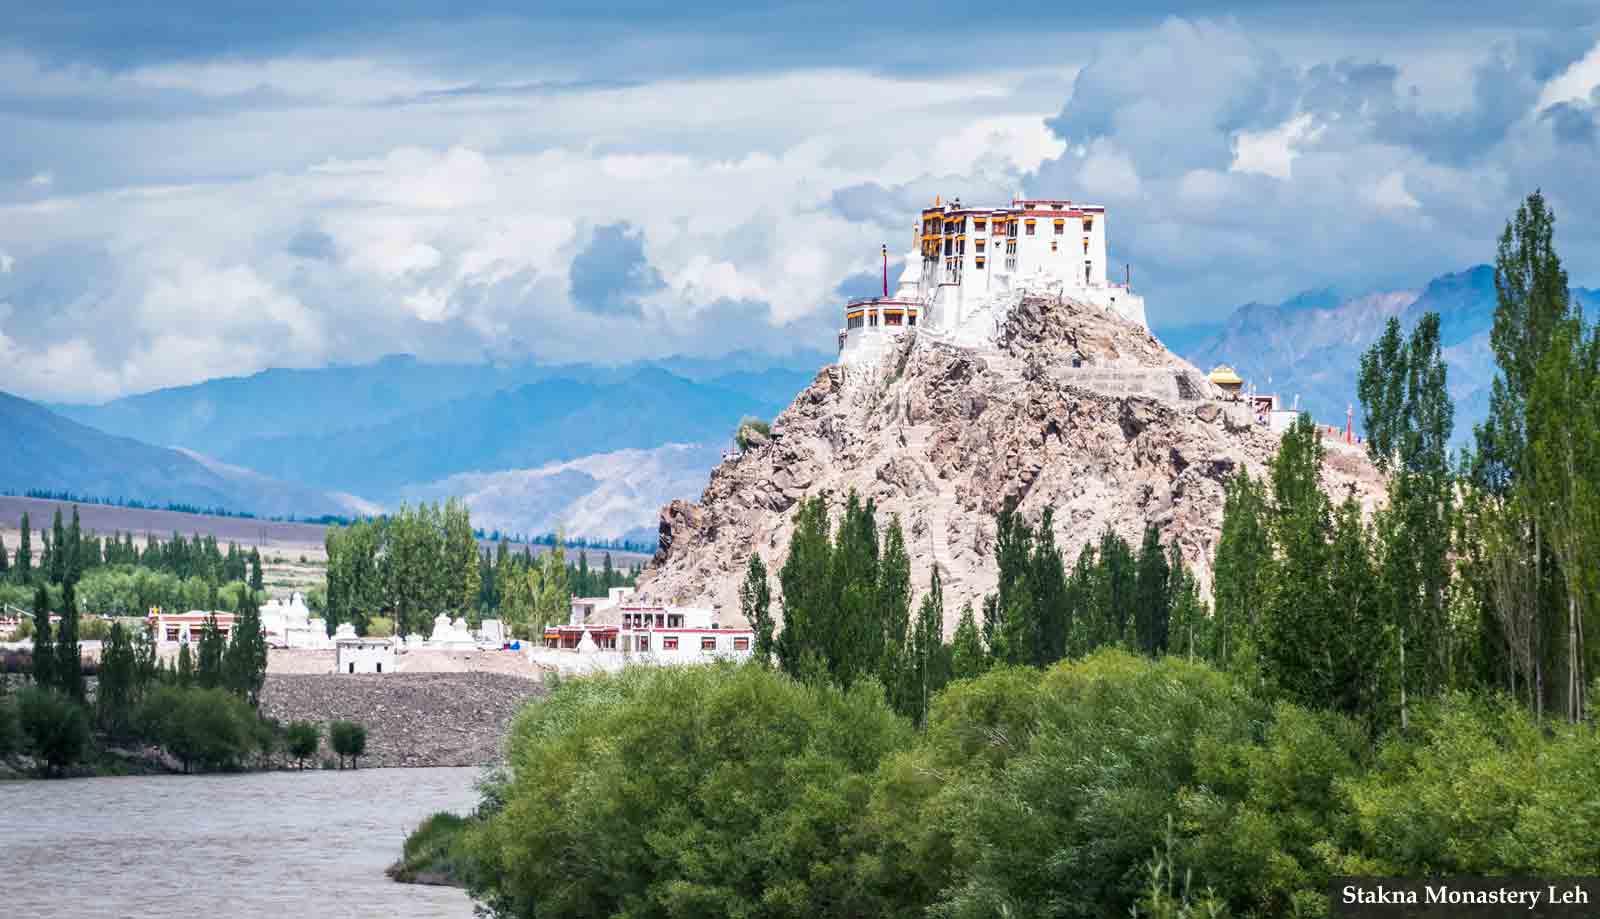 Stakna Monastery Leh